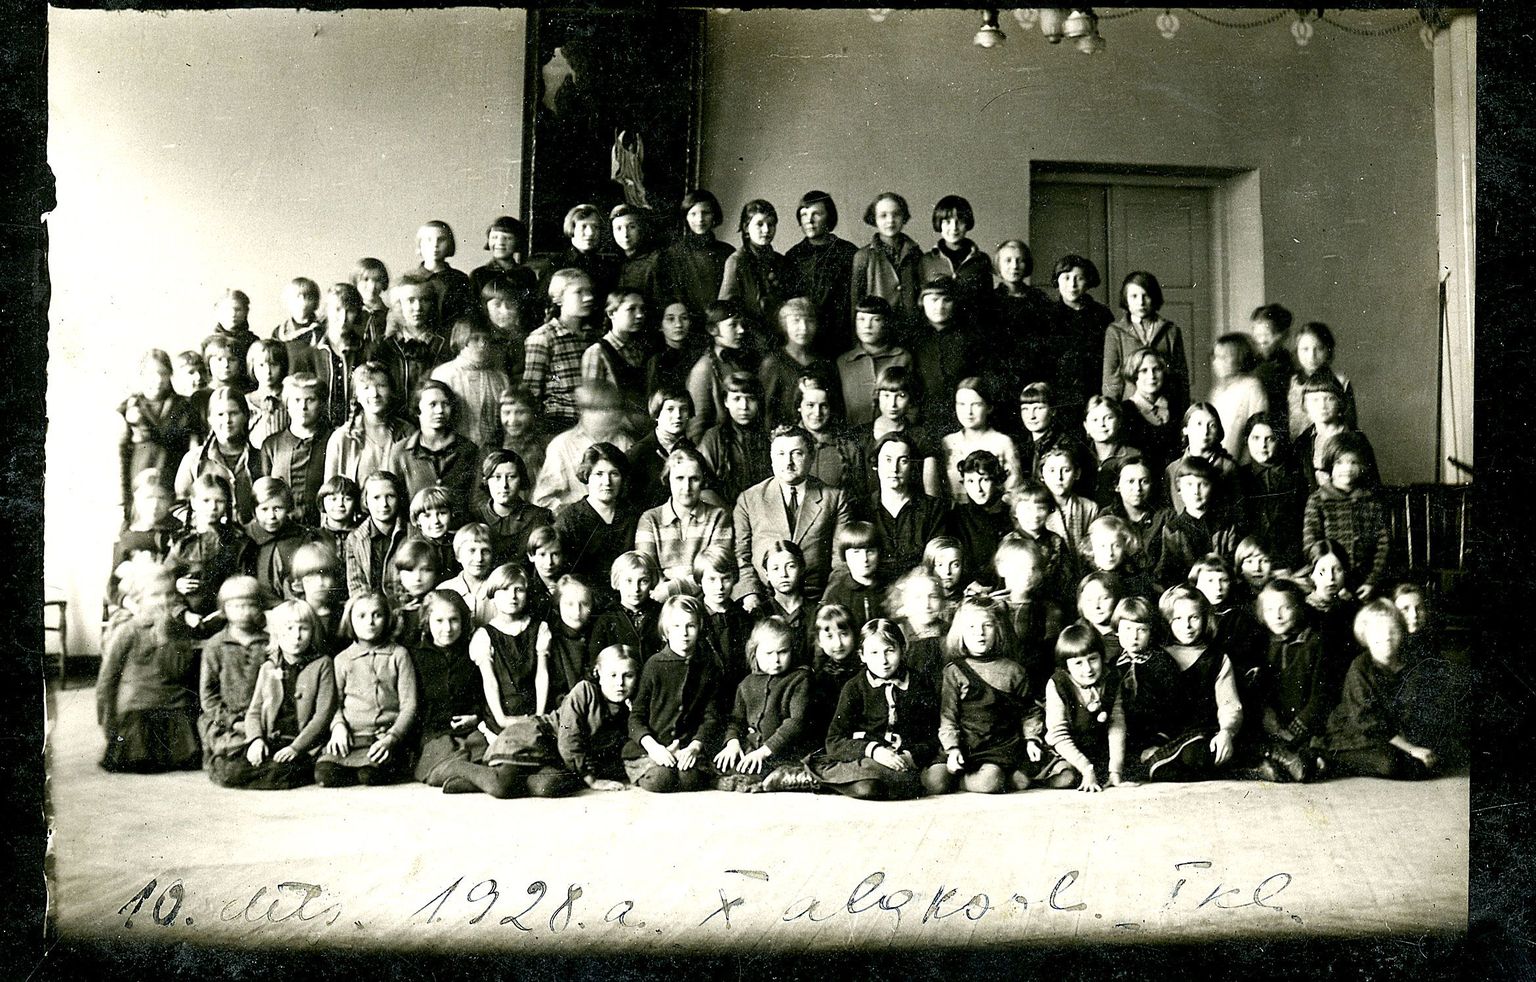 Tartu Peetri koguduse asutatud (1906) emakeelse algkooli, Eesti Wabariigi aegse linna 10. algkooli ühispilt 1928/29. õppeaastast. 1. klassi astus tol sügisel 29 õpilast, nende seas ka Virve Heido (esimeses reas, toetumas kätele). Nüüd jagab väärikas eas Virve Adamson-Heido (92) meiega oma kooliaegseid mälestusi.